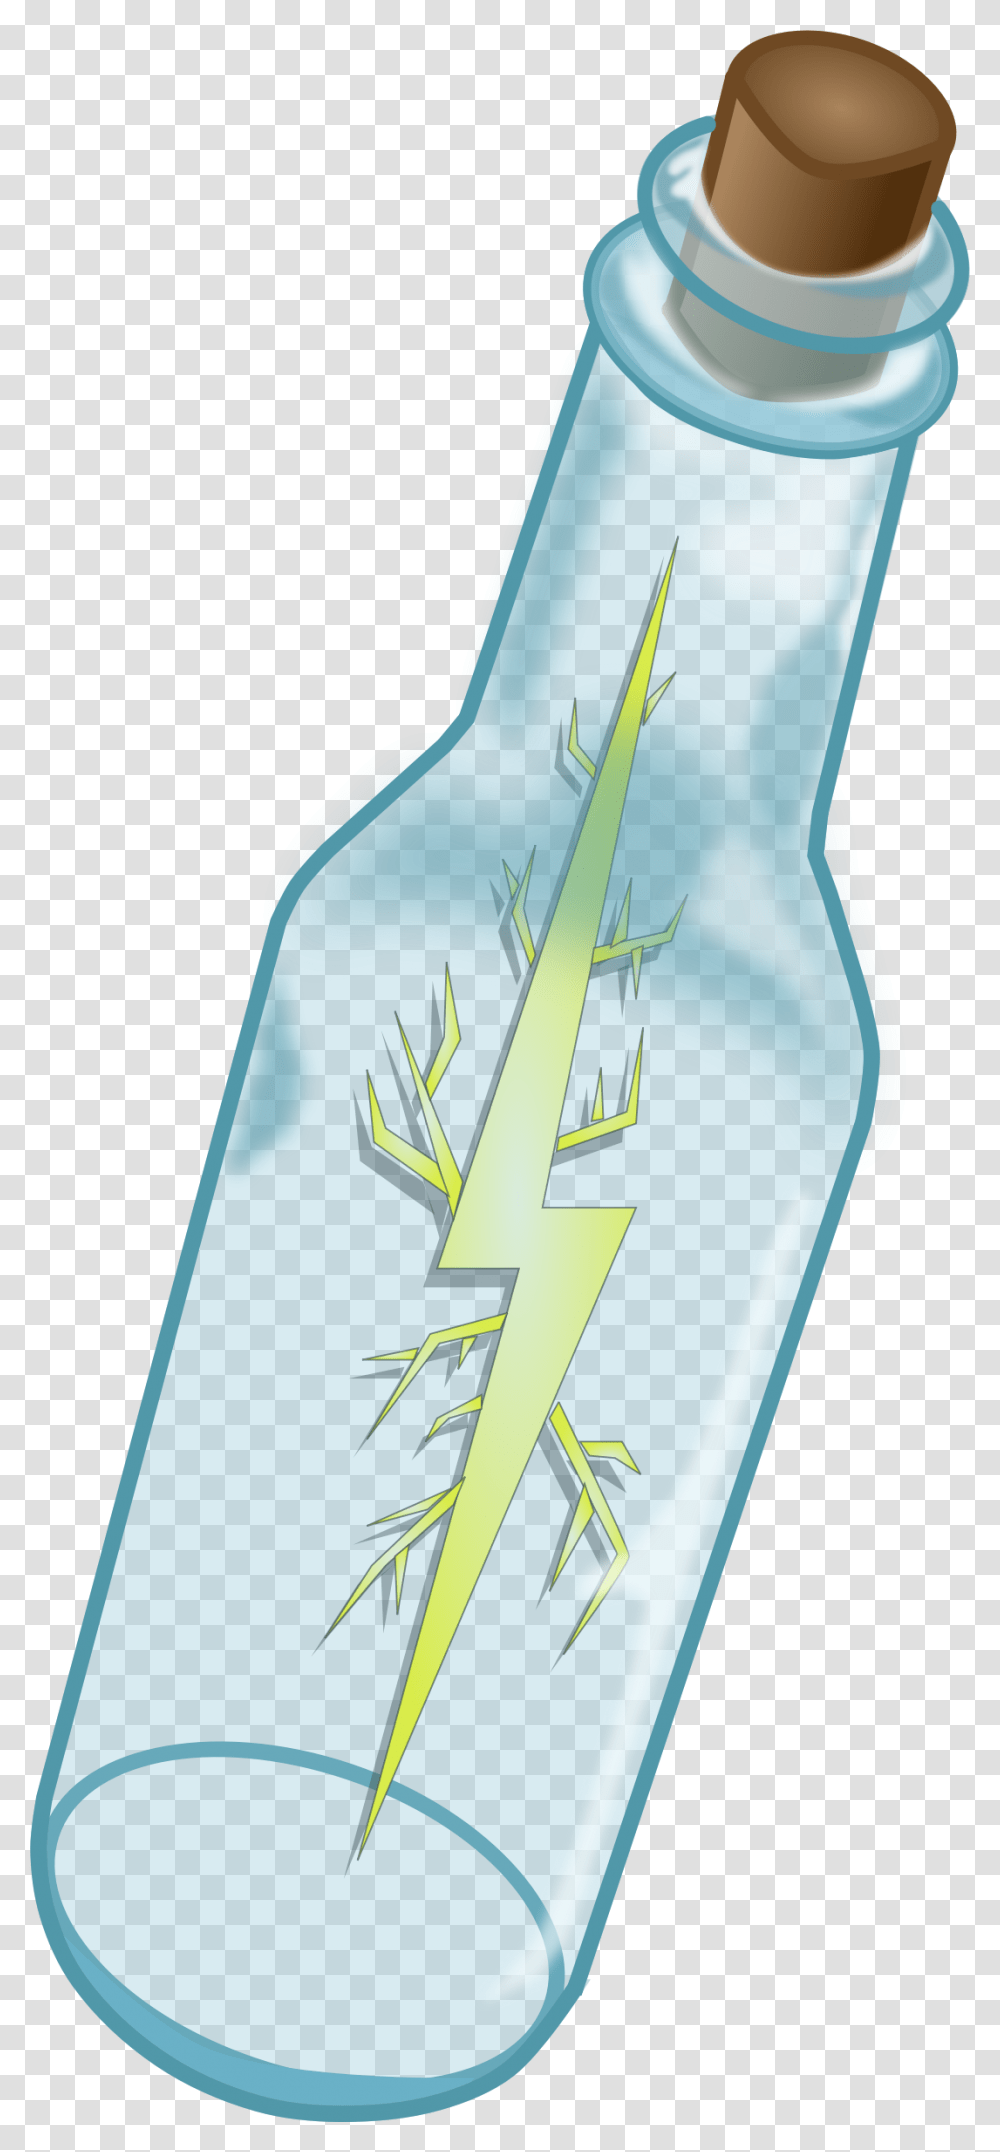 Lightning In A Bottle Clip Arts Lightning In A Bottle, Liquor, Alcohol, Beverage, Drink Transparent Png